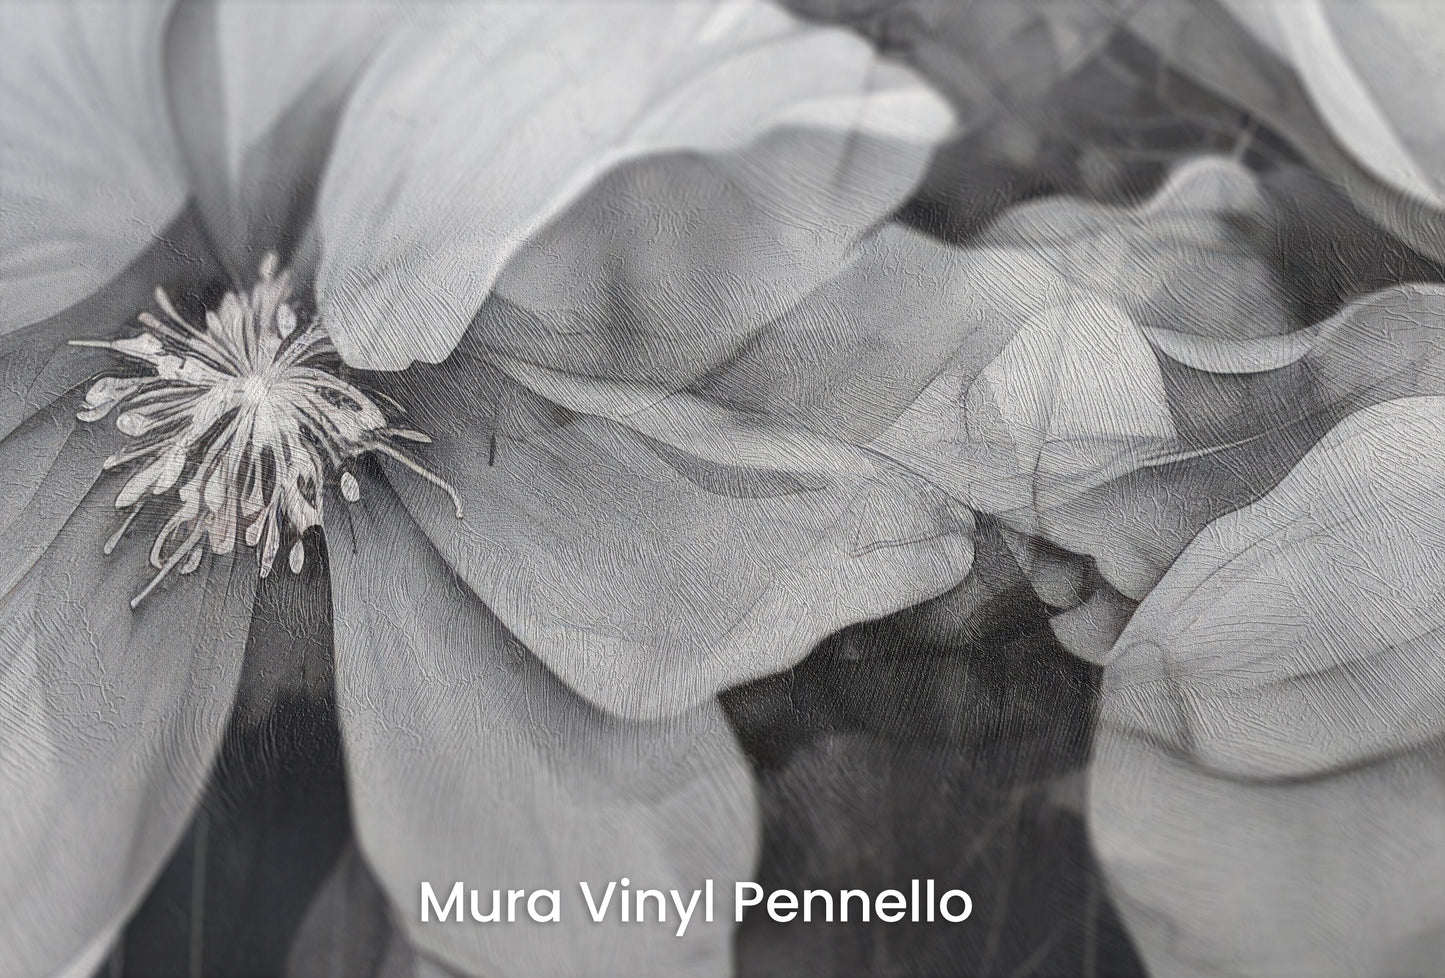 Zbliżenie na artystyczną fototapetę o nazwie CHARCOAL FLORAL CASCADE na podłożu Mura Vinyl Pennello - faktura pociągnięć pędzla malarskiego.